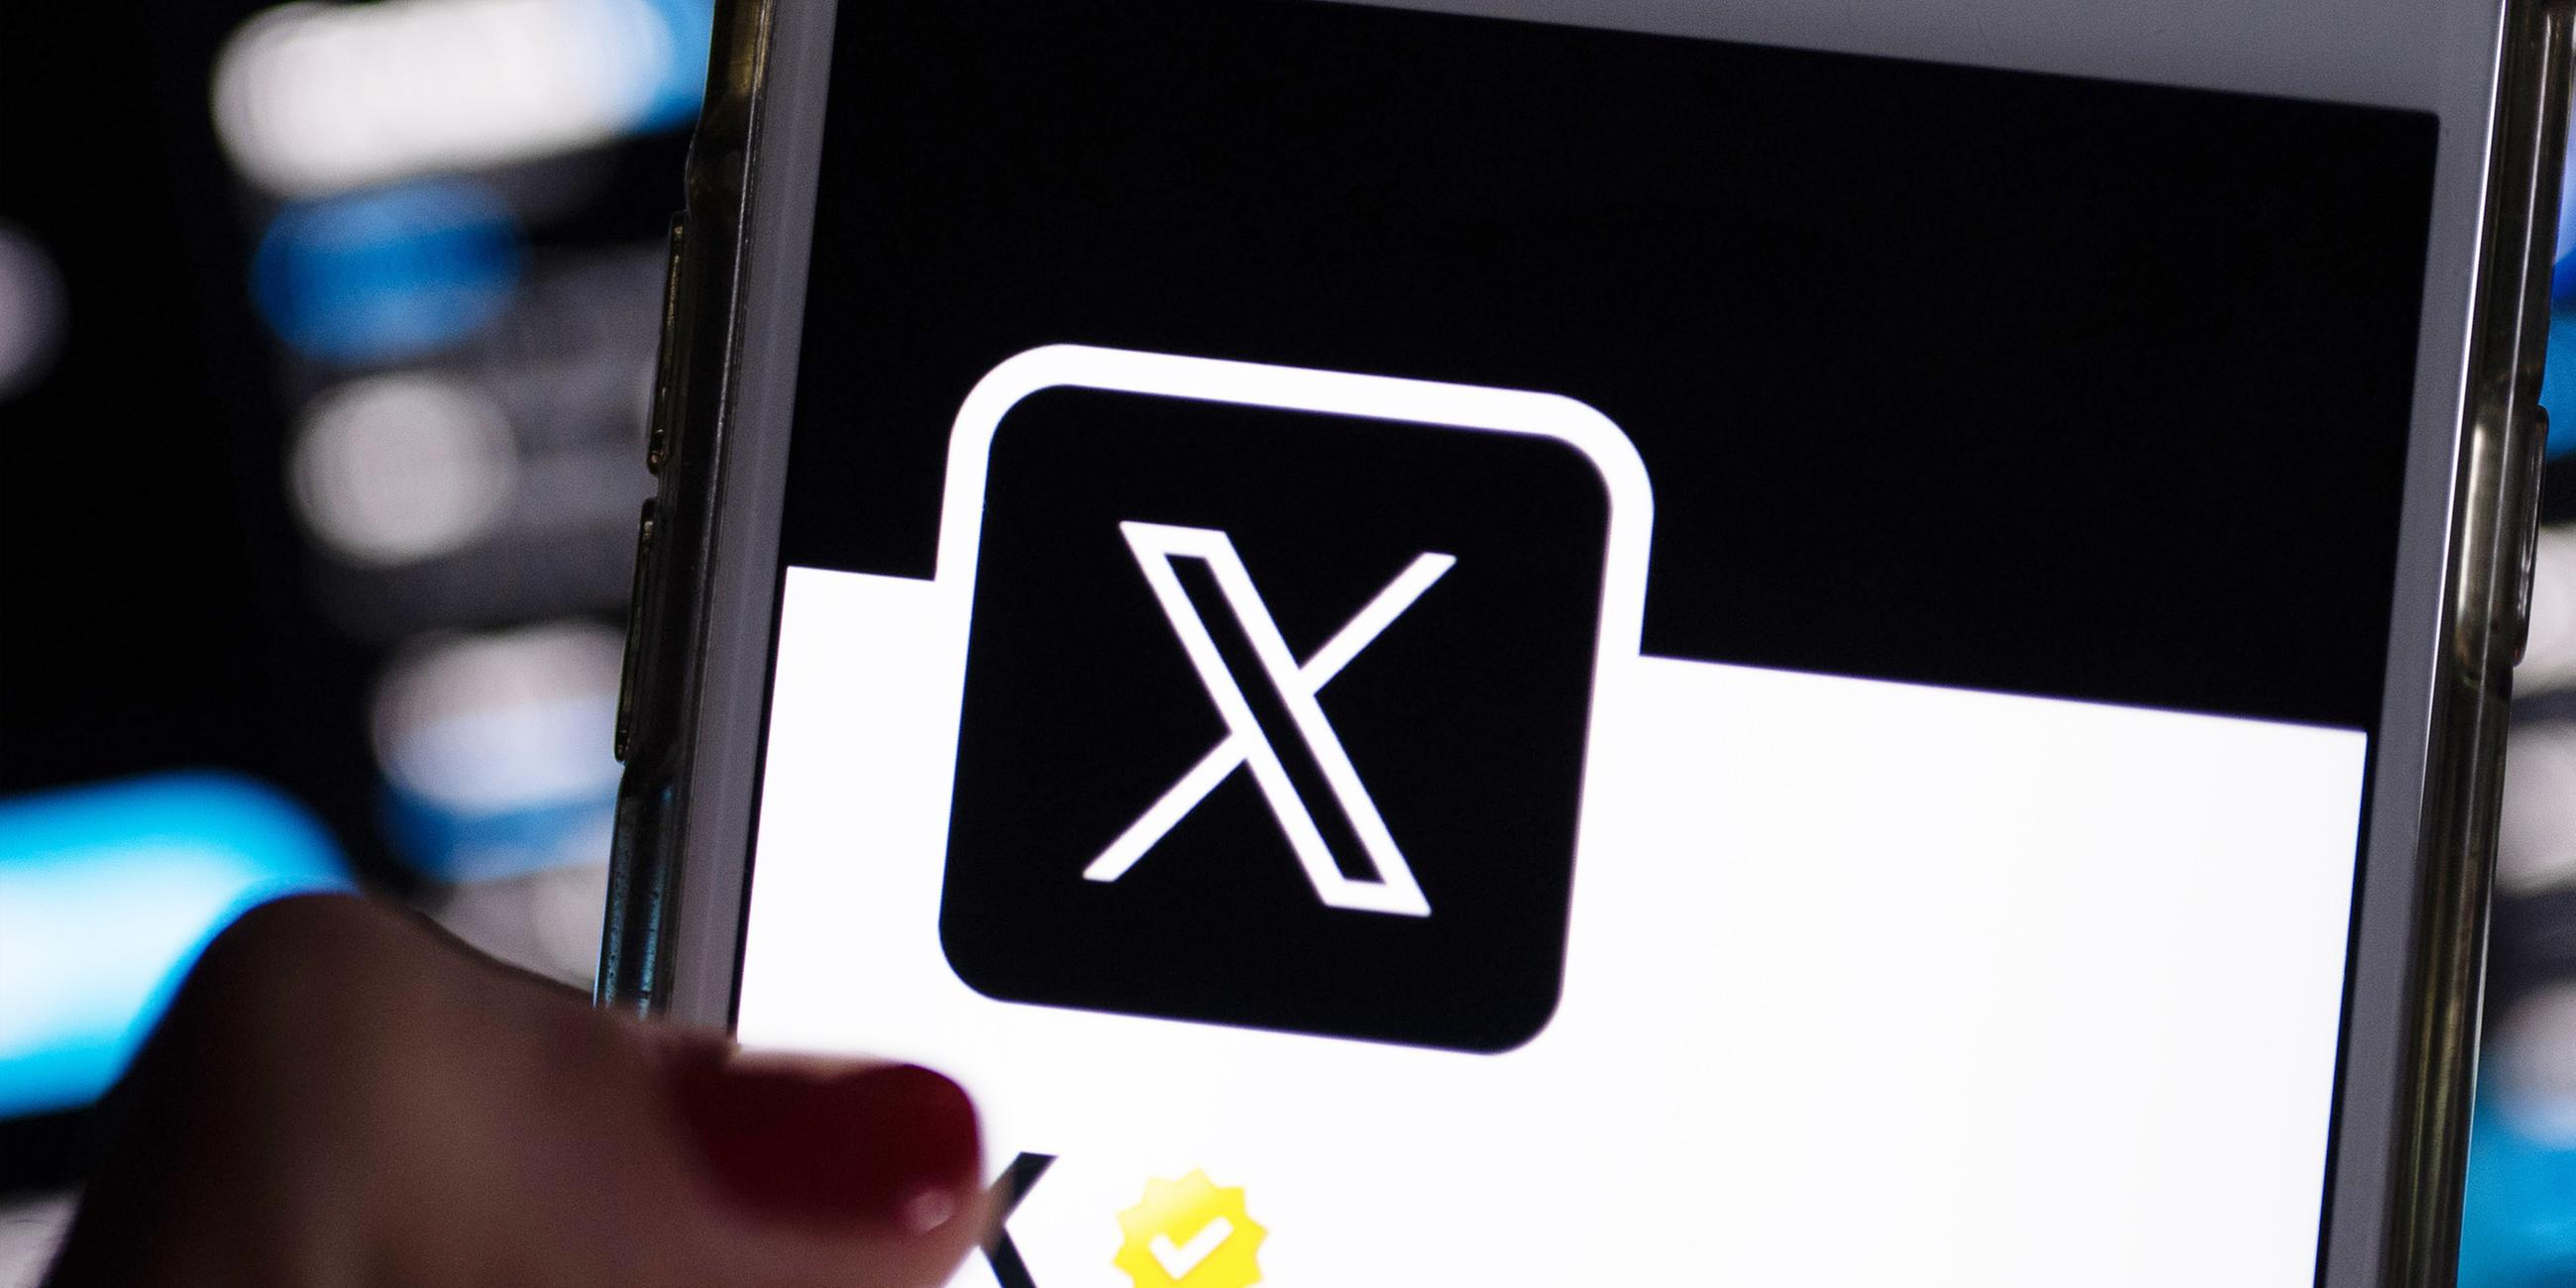 Auf dem offiziellen Profil der Plattform X auf dem Bildschirm eines Smartphones ist der weiße Buchstabe X auf schwarzem Hintergrund zu sehen.